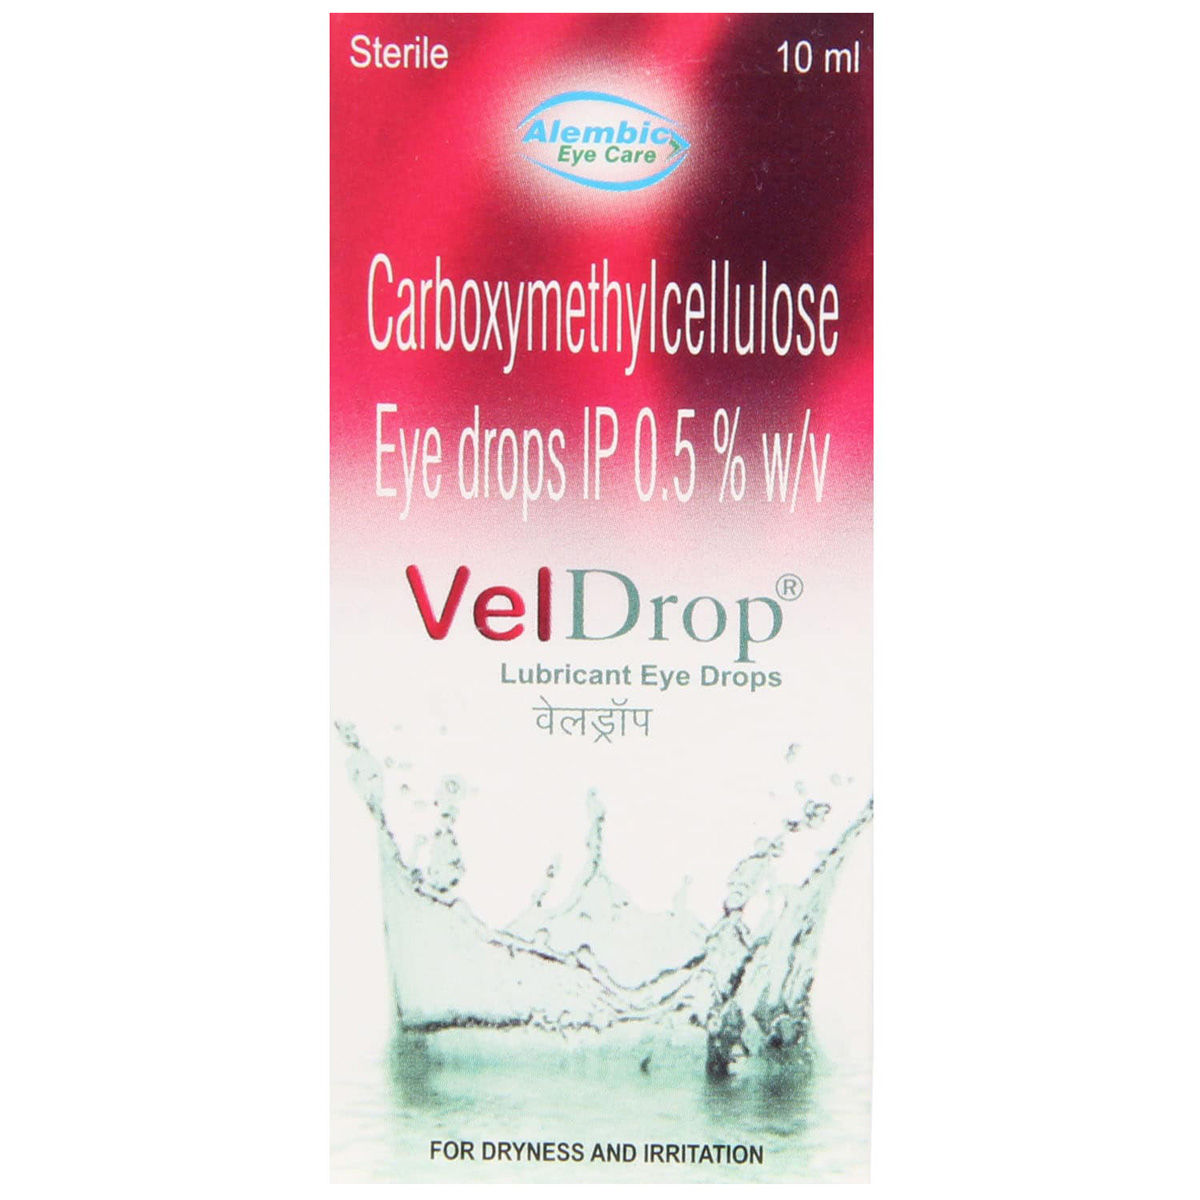 Buy Veldrop Eye Drops 10 ml Online